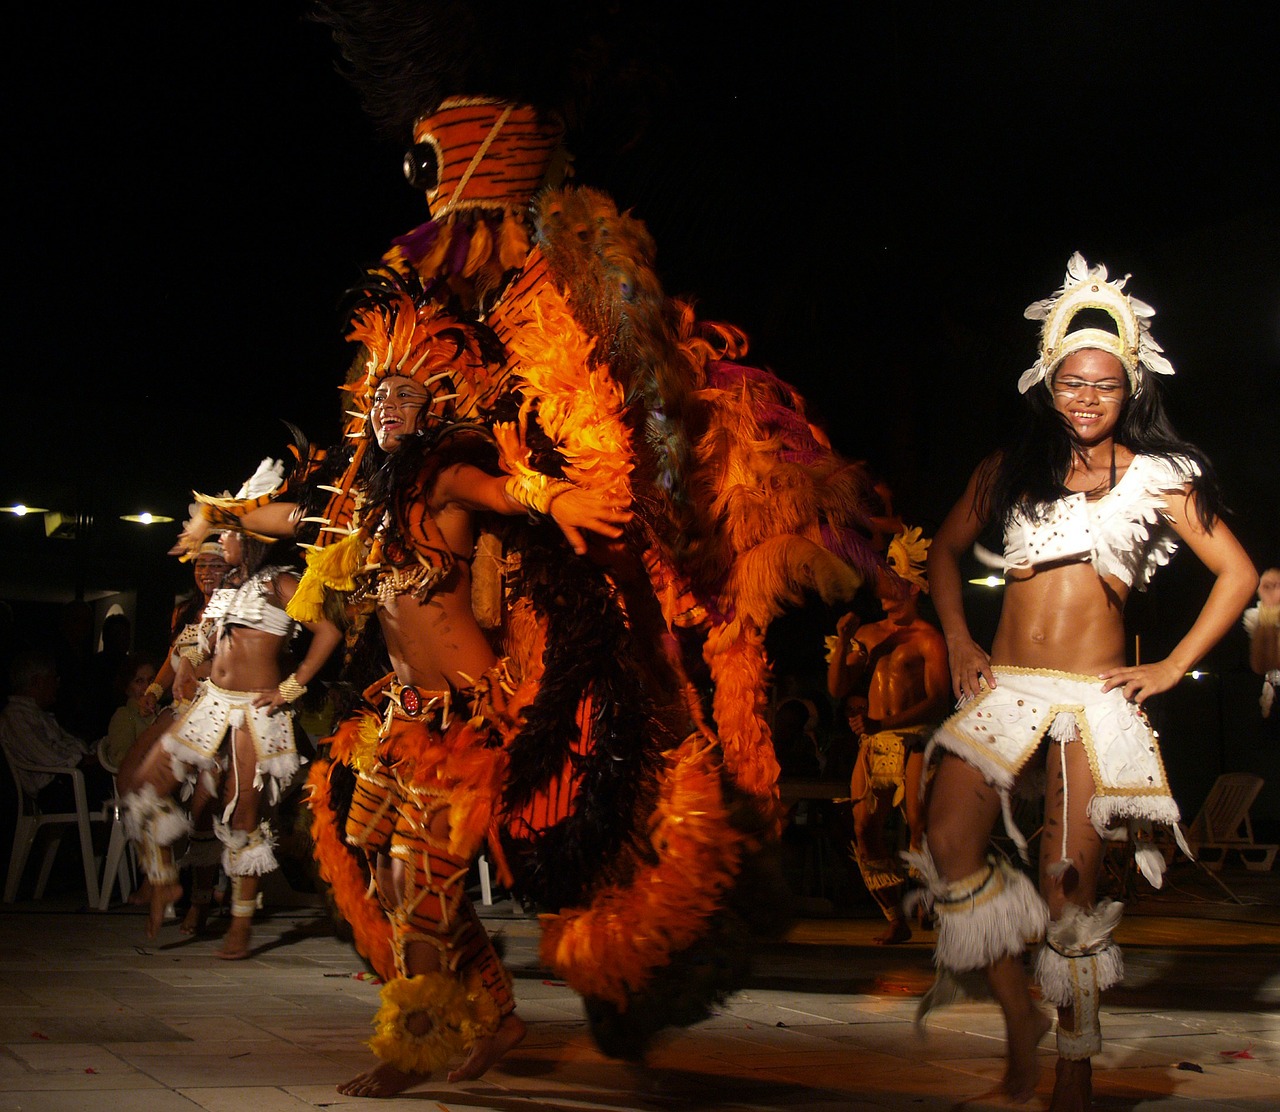 Em Manaus você vai encontrar shows com muita dança, samba e cultura da Amazônia